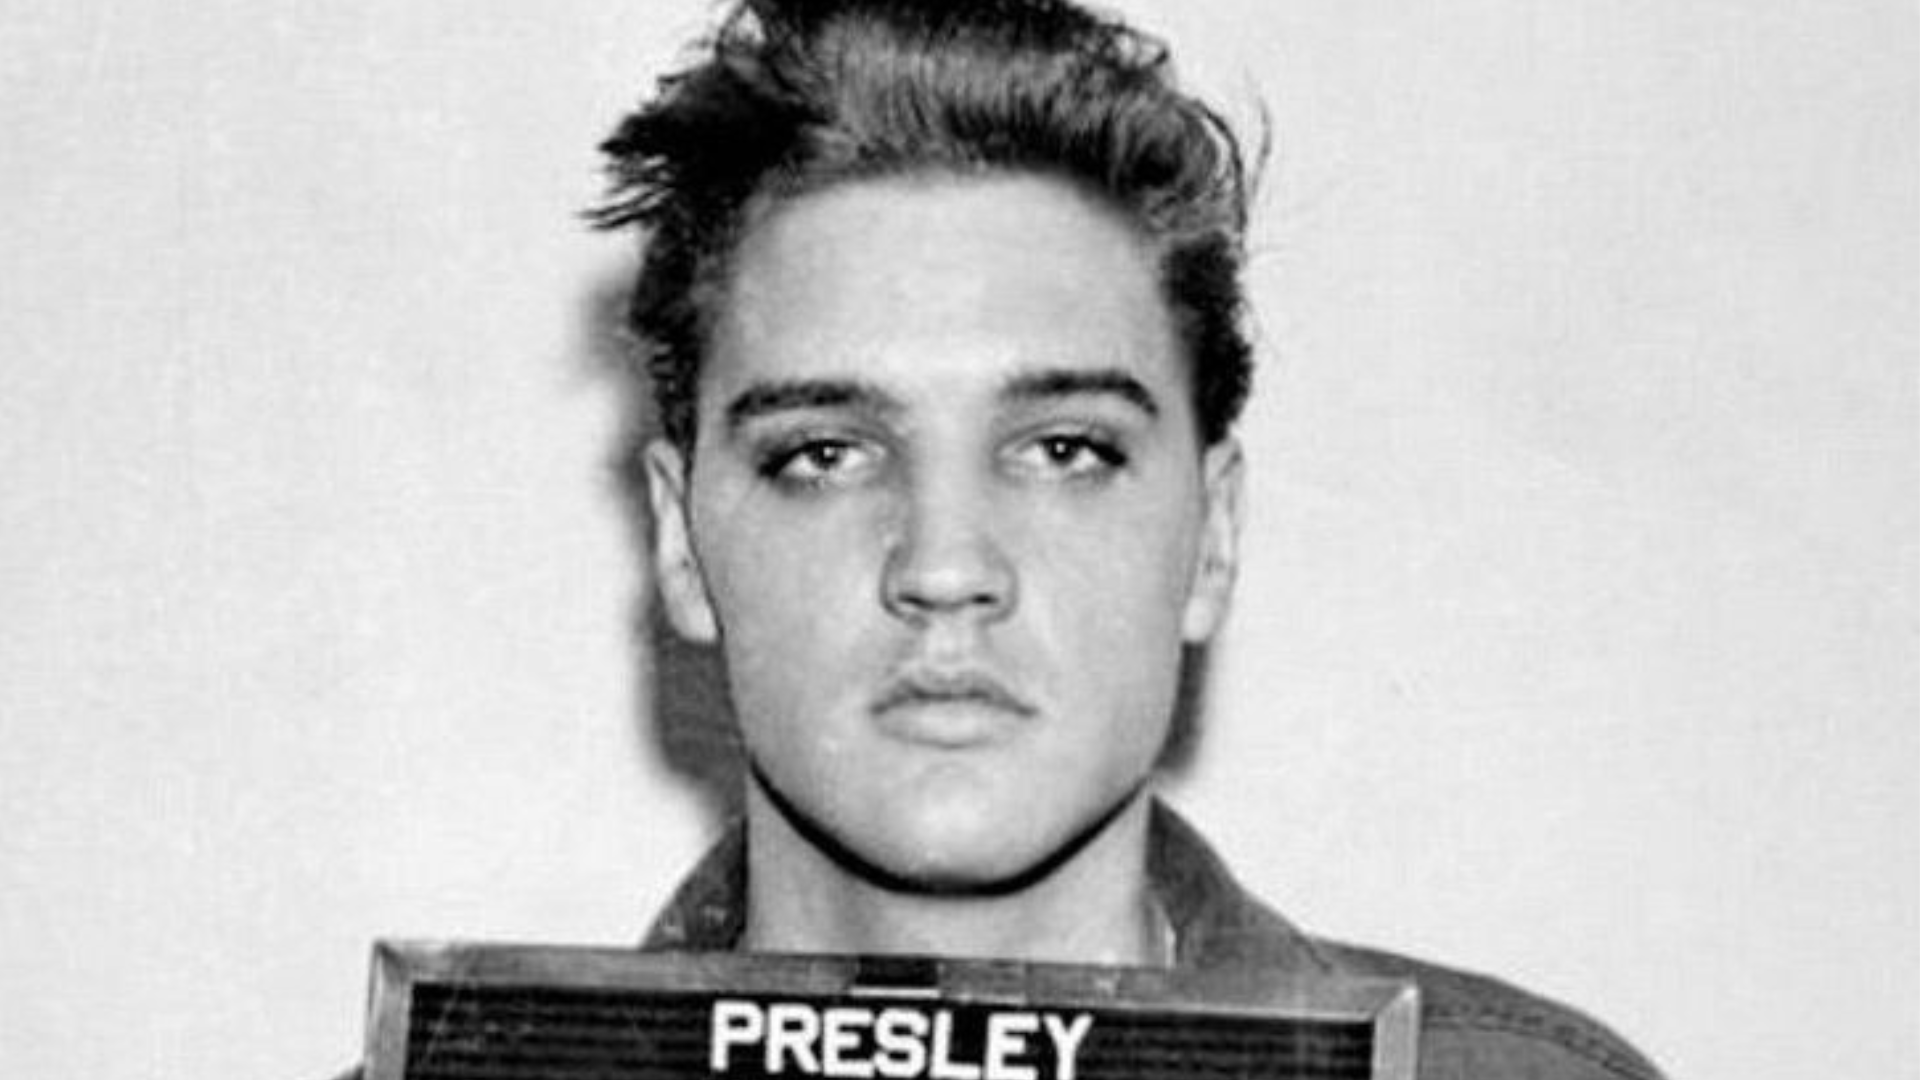 Elvis Presley, disputa legale per Graceland, la casa dove è sepolto: l’erede è la nipote Riley?